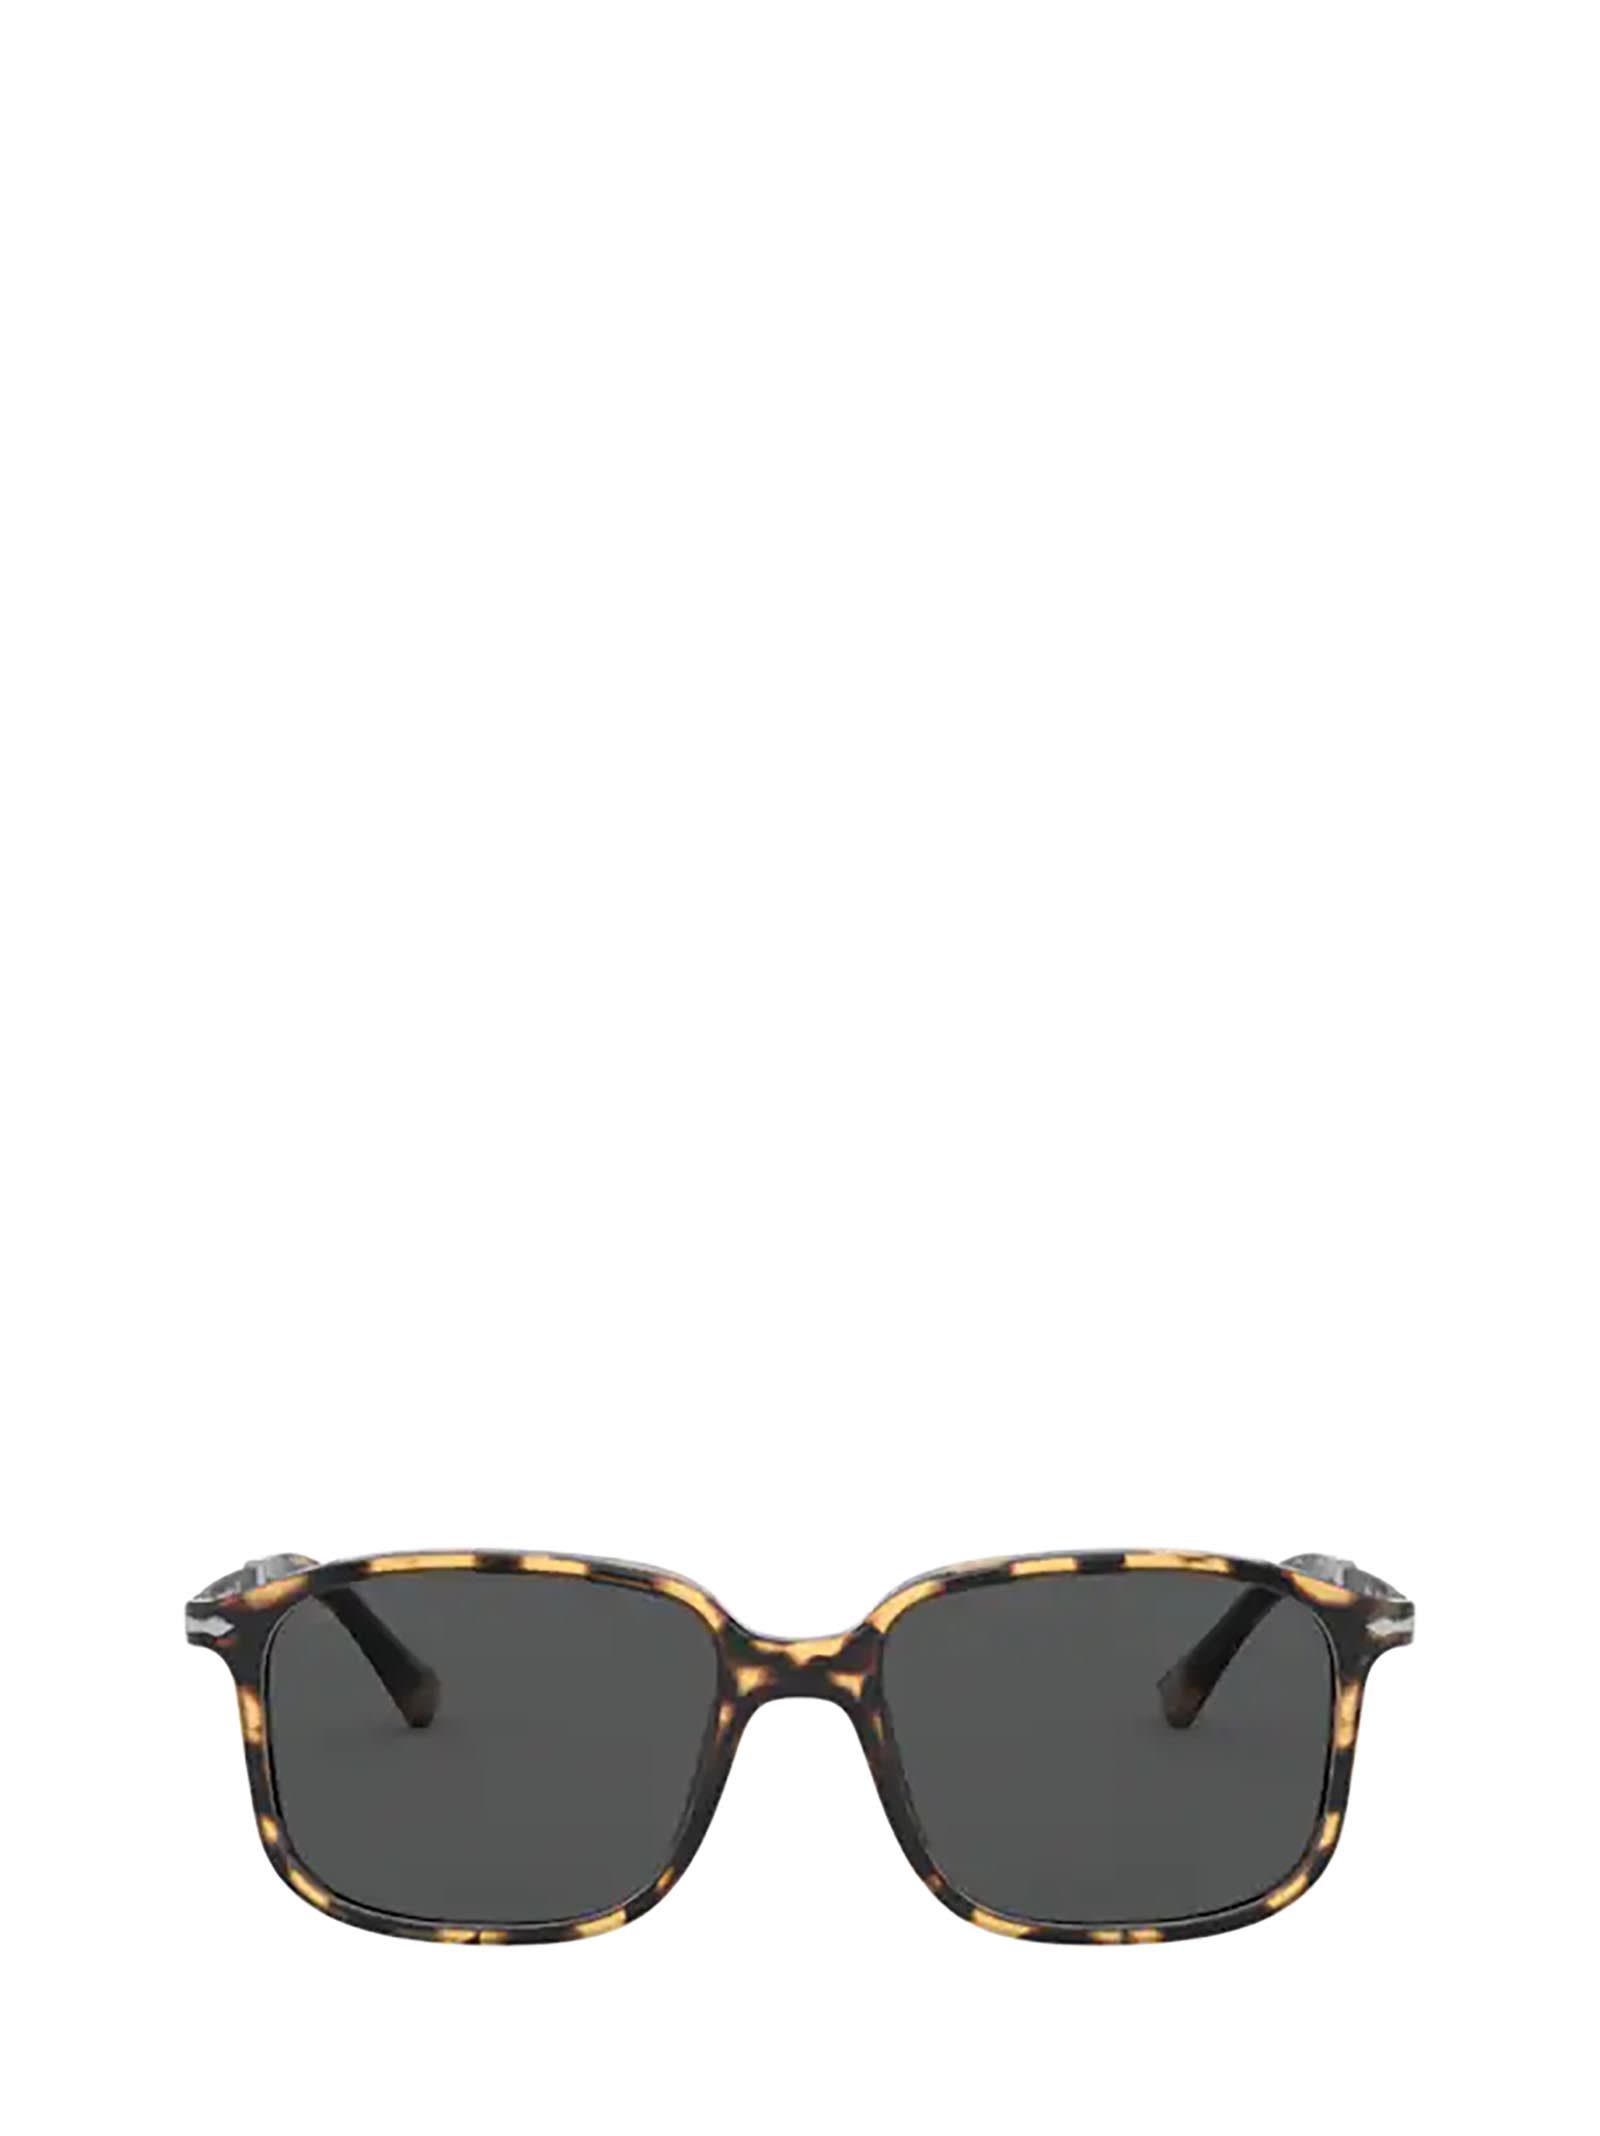 Persol Persol Po3246s Brown & Beige Tortoise Sunglasses